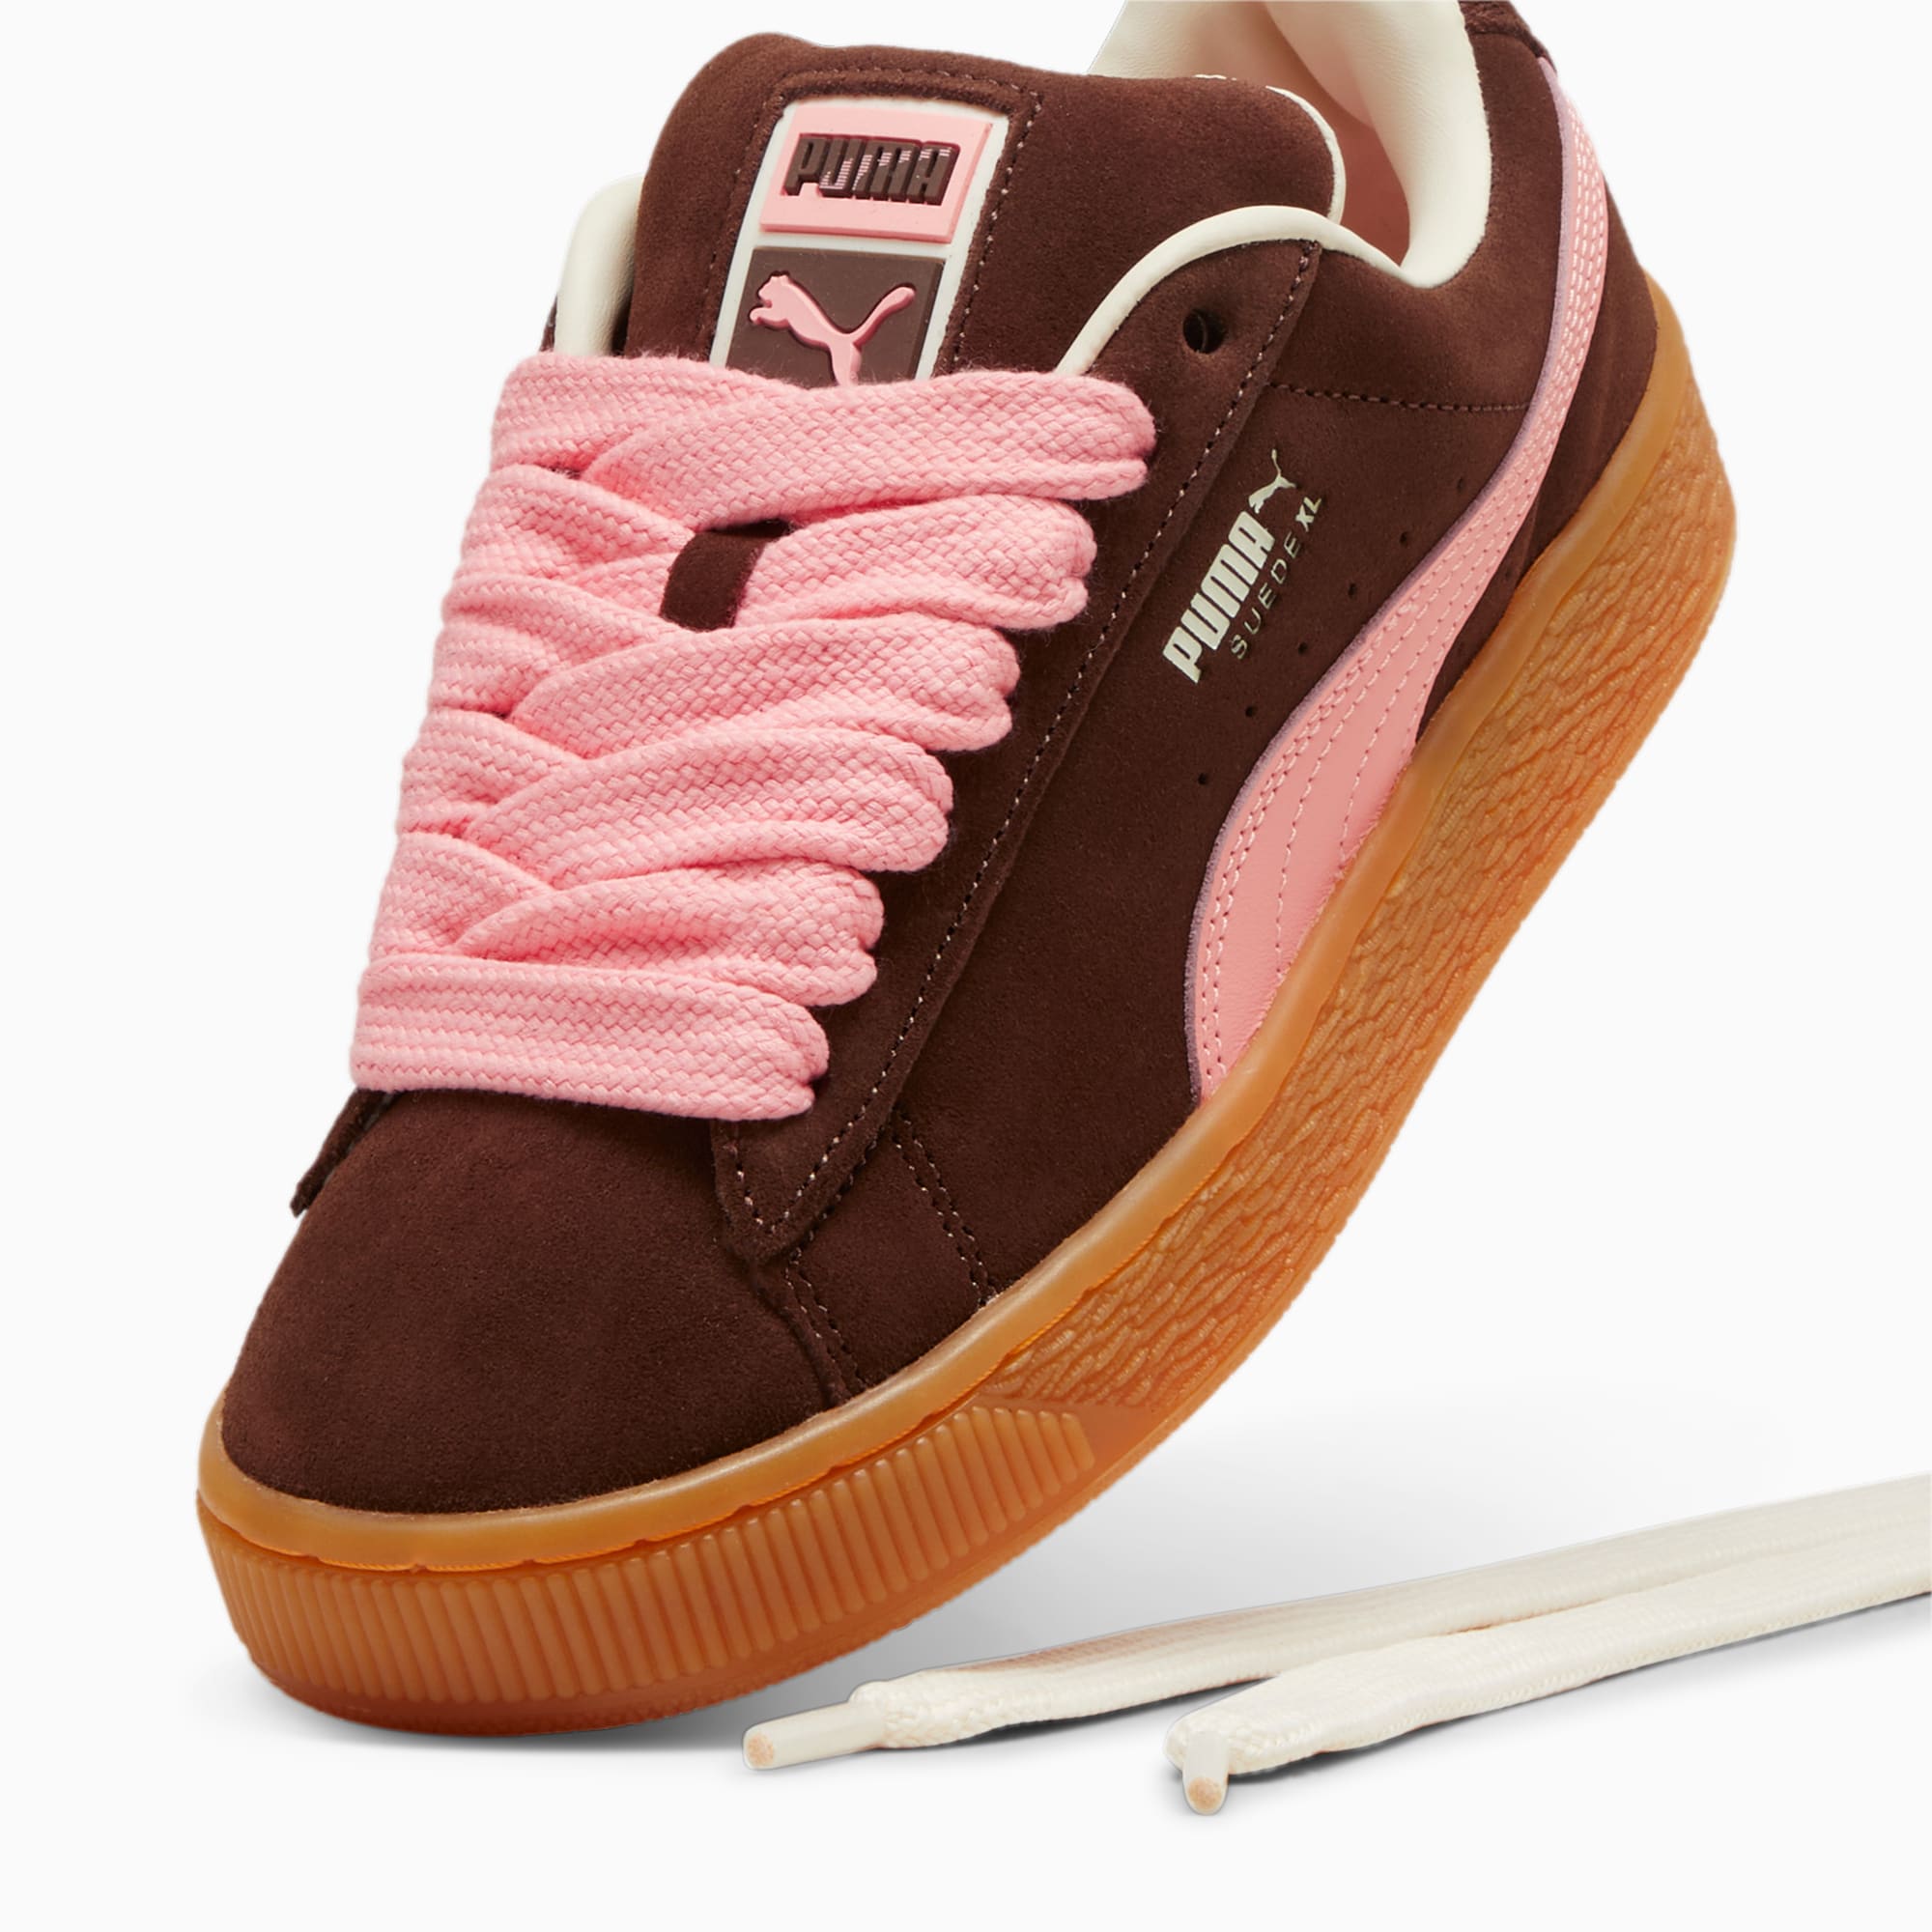 PUMA Suede XL Sneakers Damen Schuhe, Braun/Rosa, Größe: 40.5, Schuhe